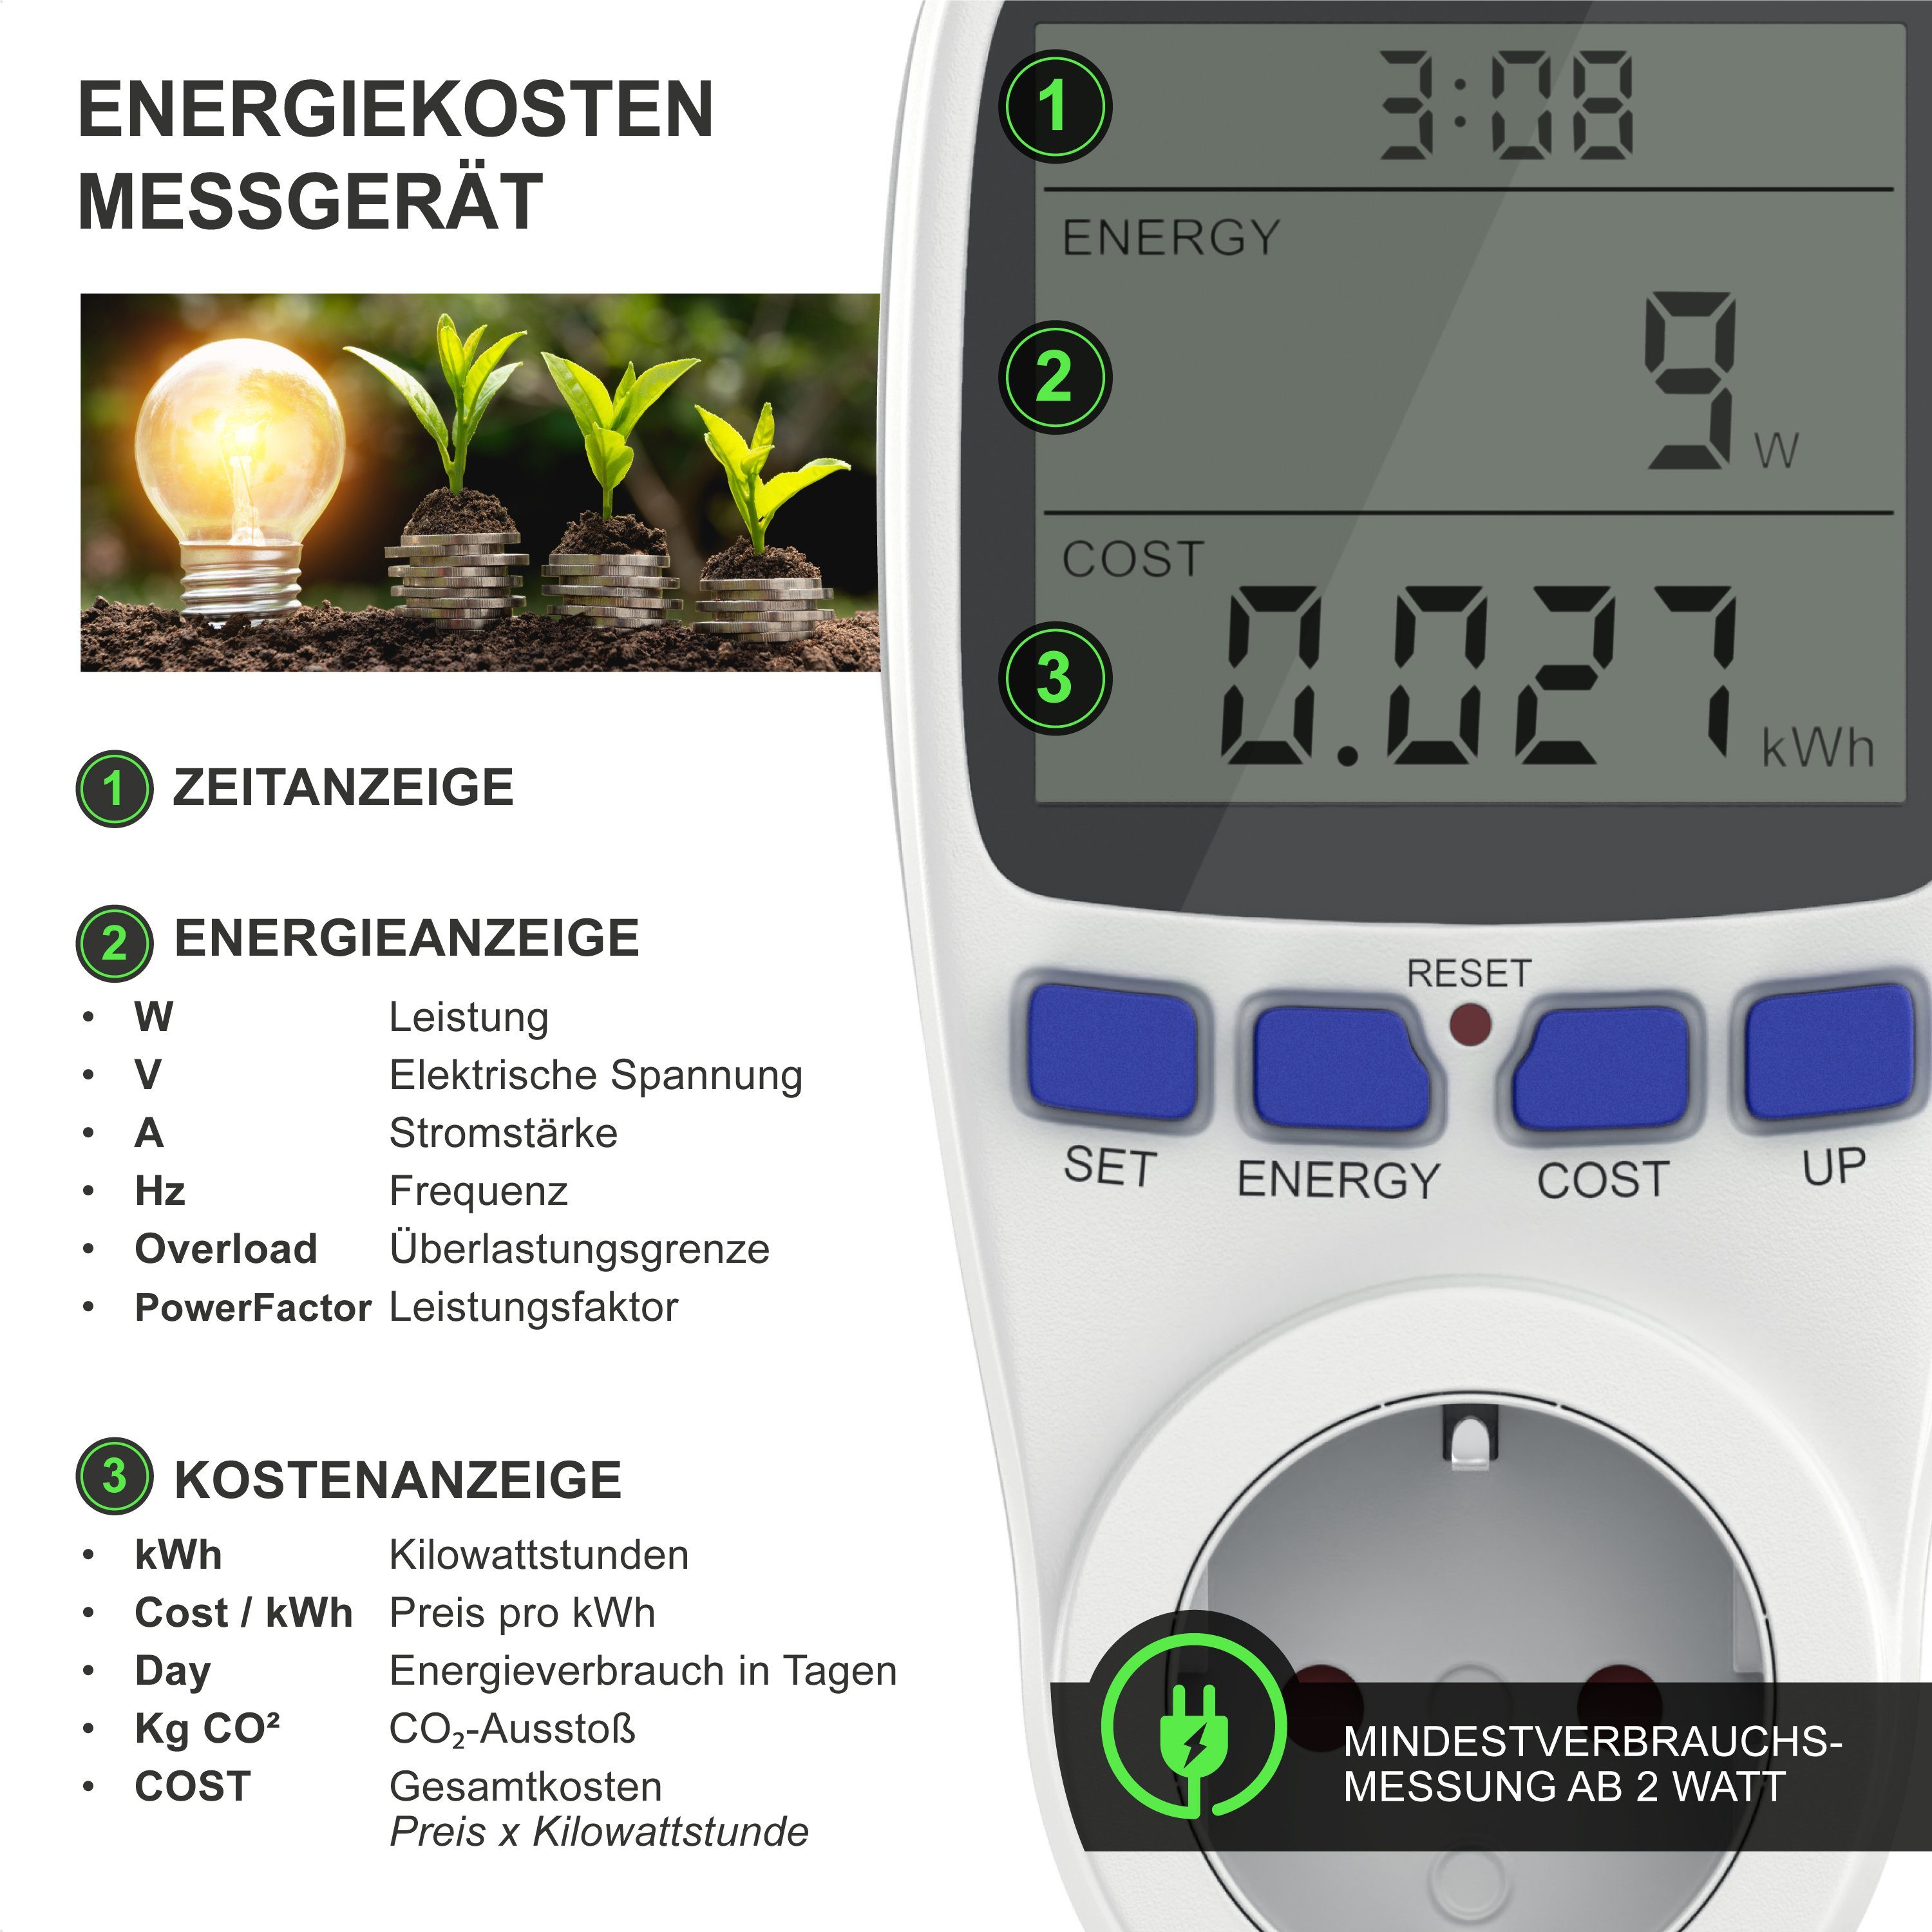 Energiekostenmessgerät, mit Energiemessgerät CSL Stromverbrauchszähler, Berührungsschutz